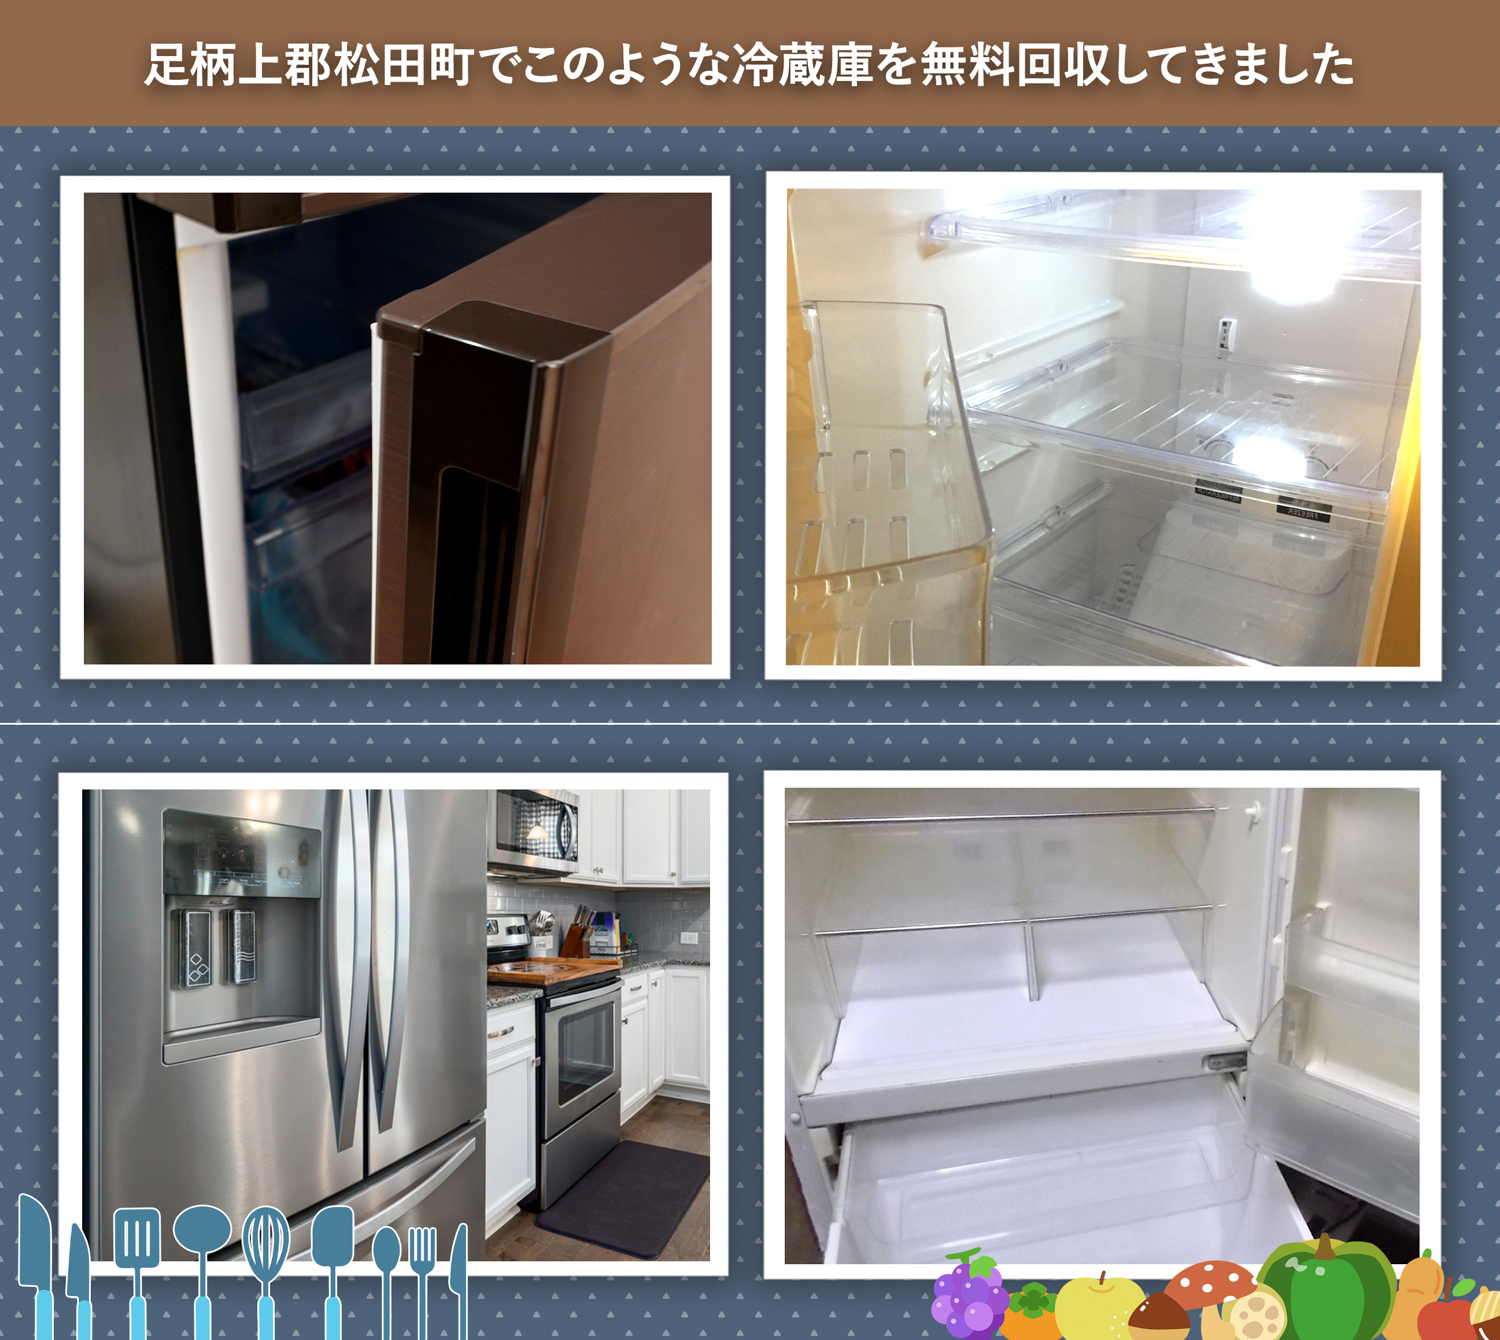 足柄上郡松田町でこのような冷蔵庫を無料回収してきました。